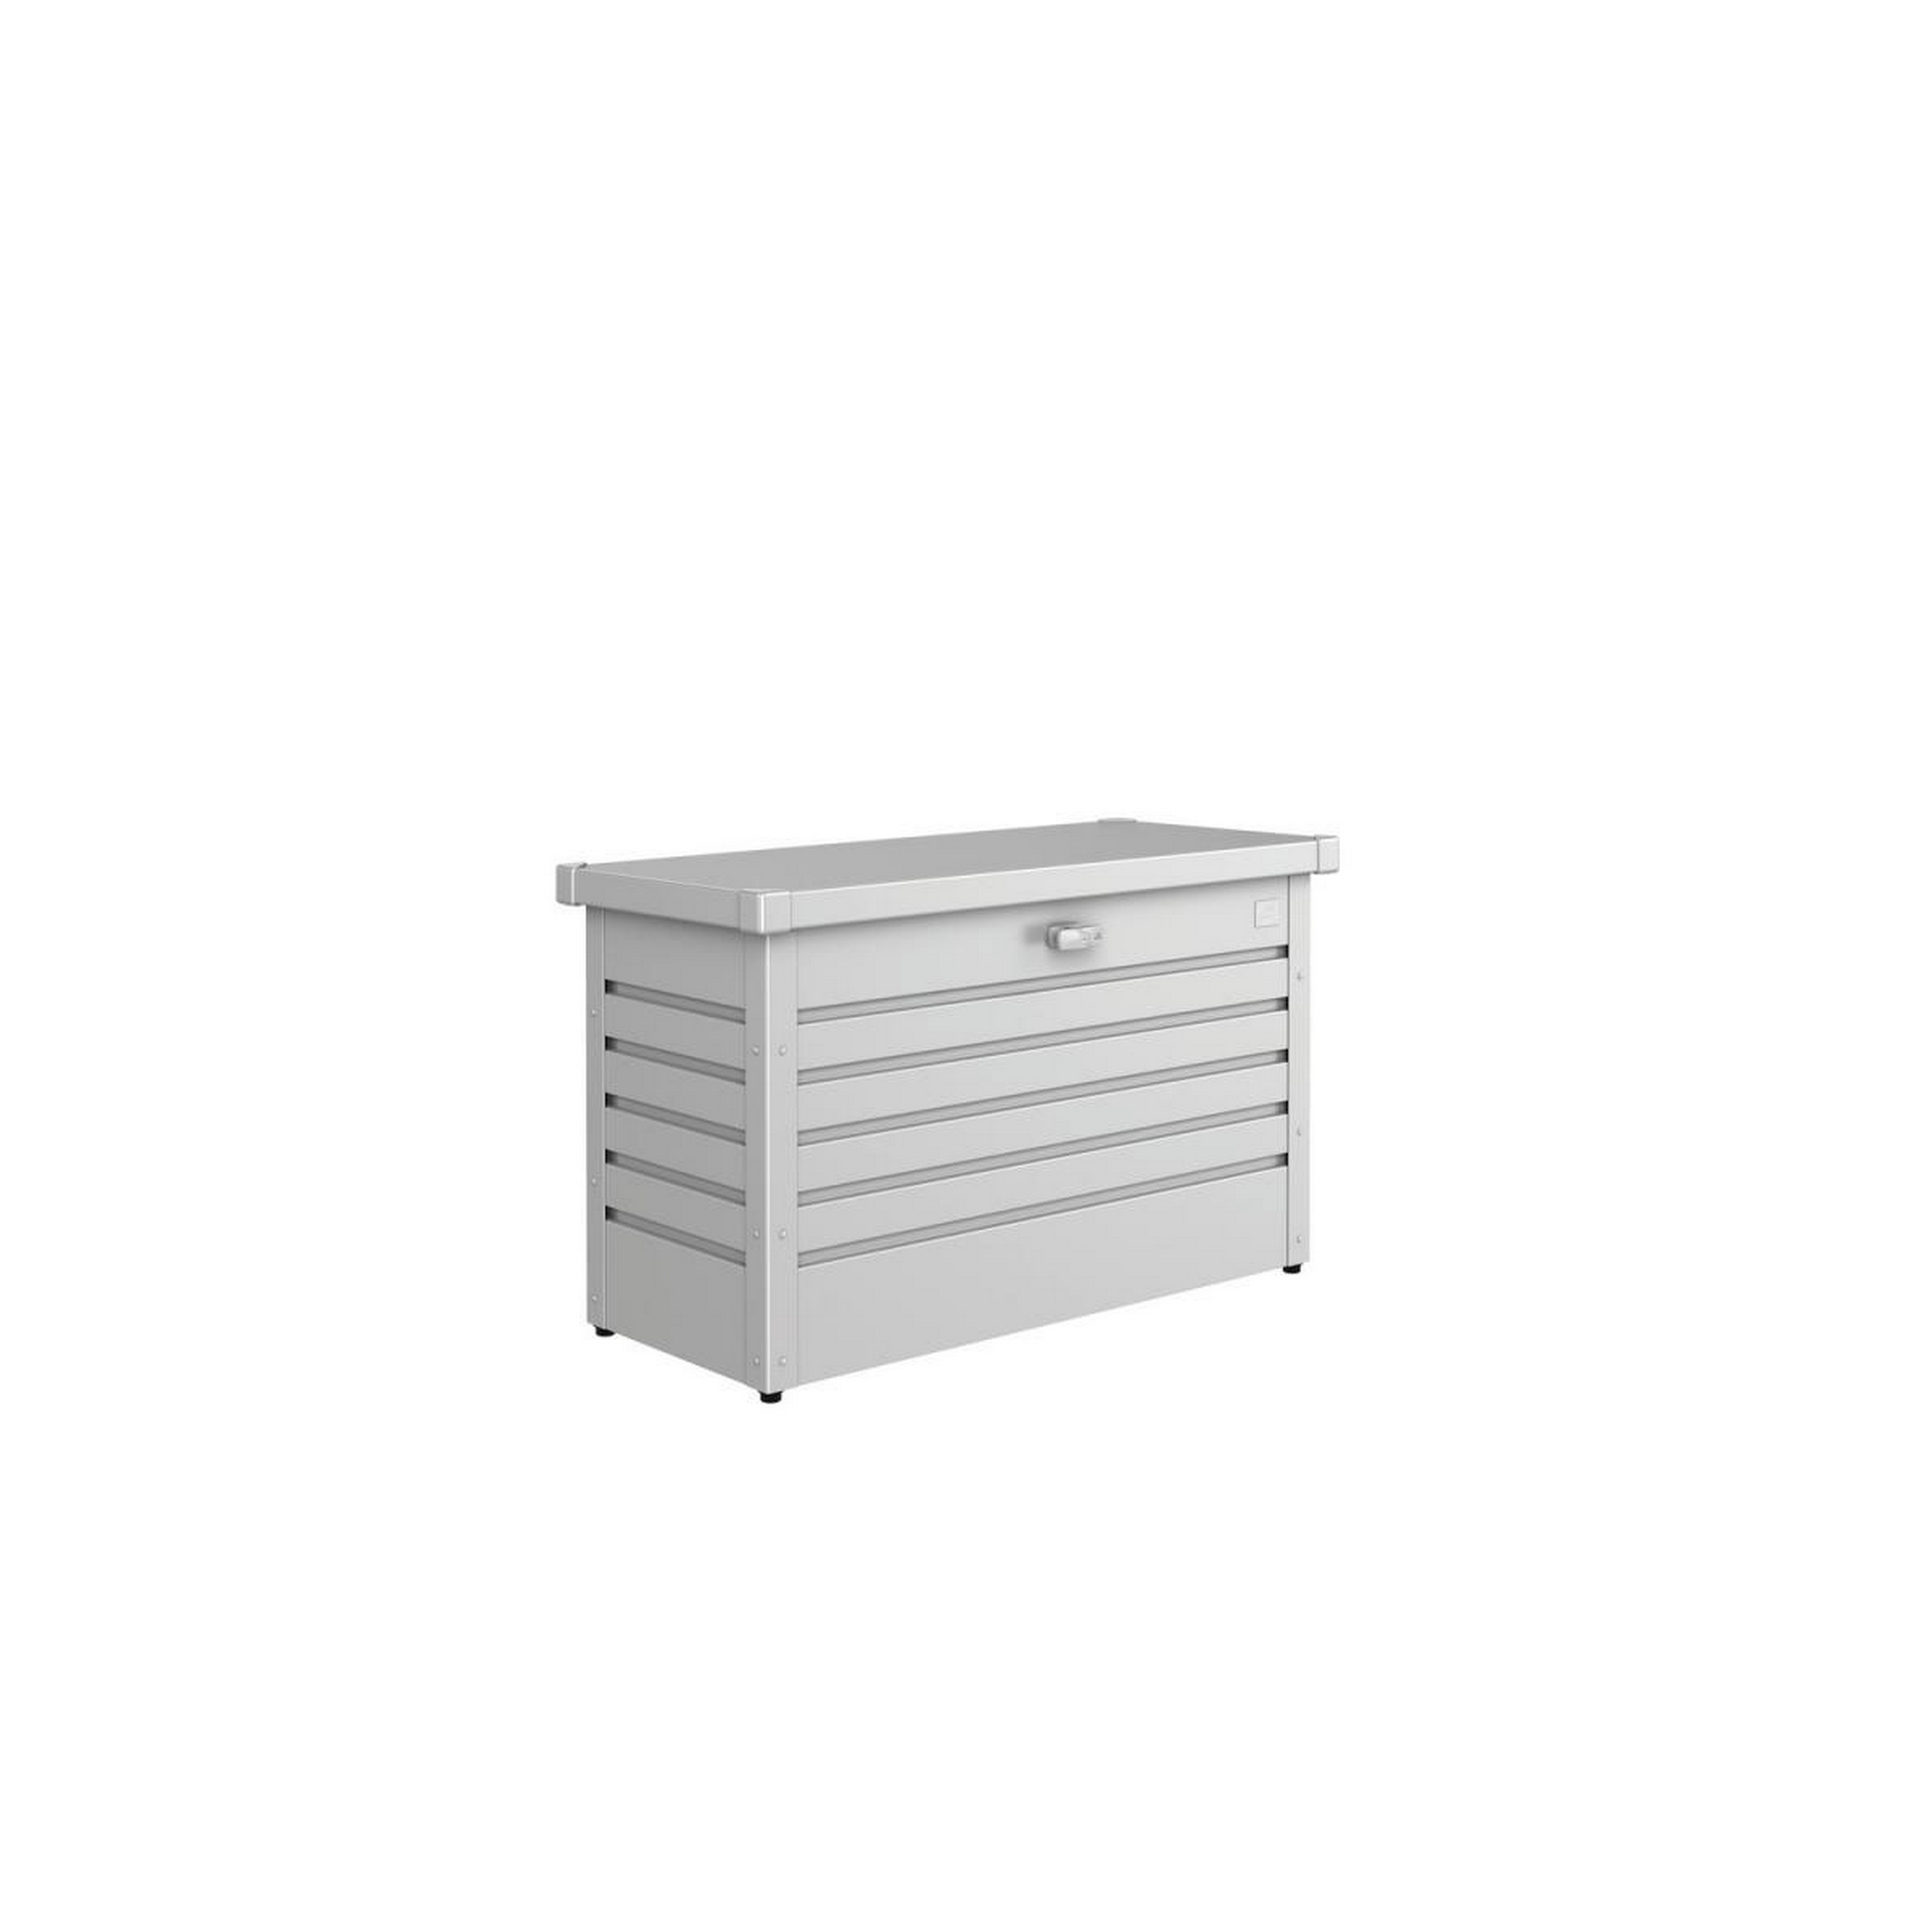 Aufbewahrungsbox 'FreizeitBox 100' silber metallic 101 x 46 x 61 cm + product picture